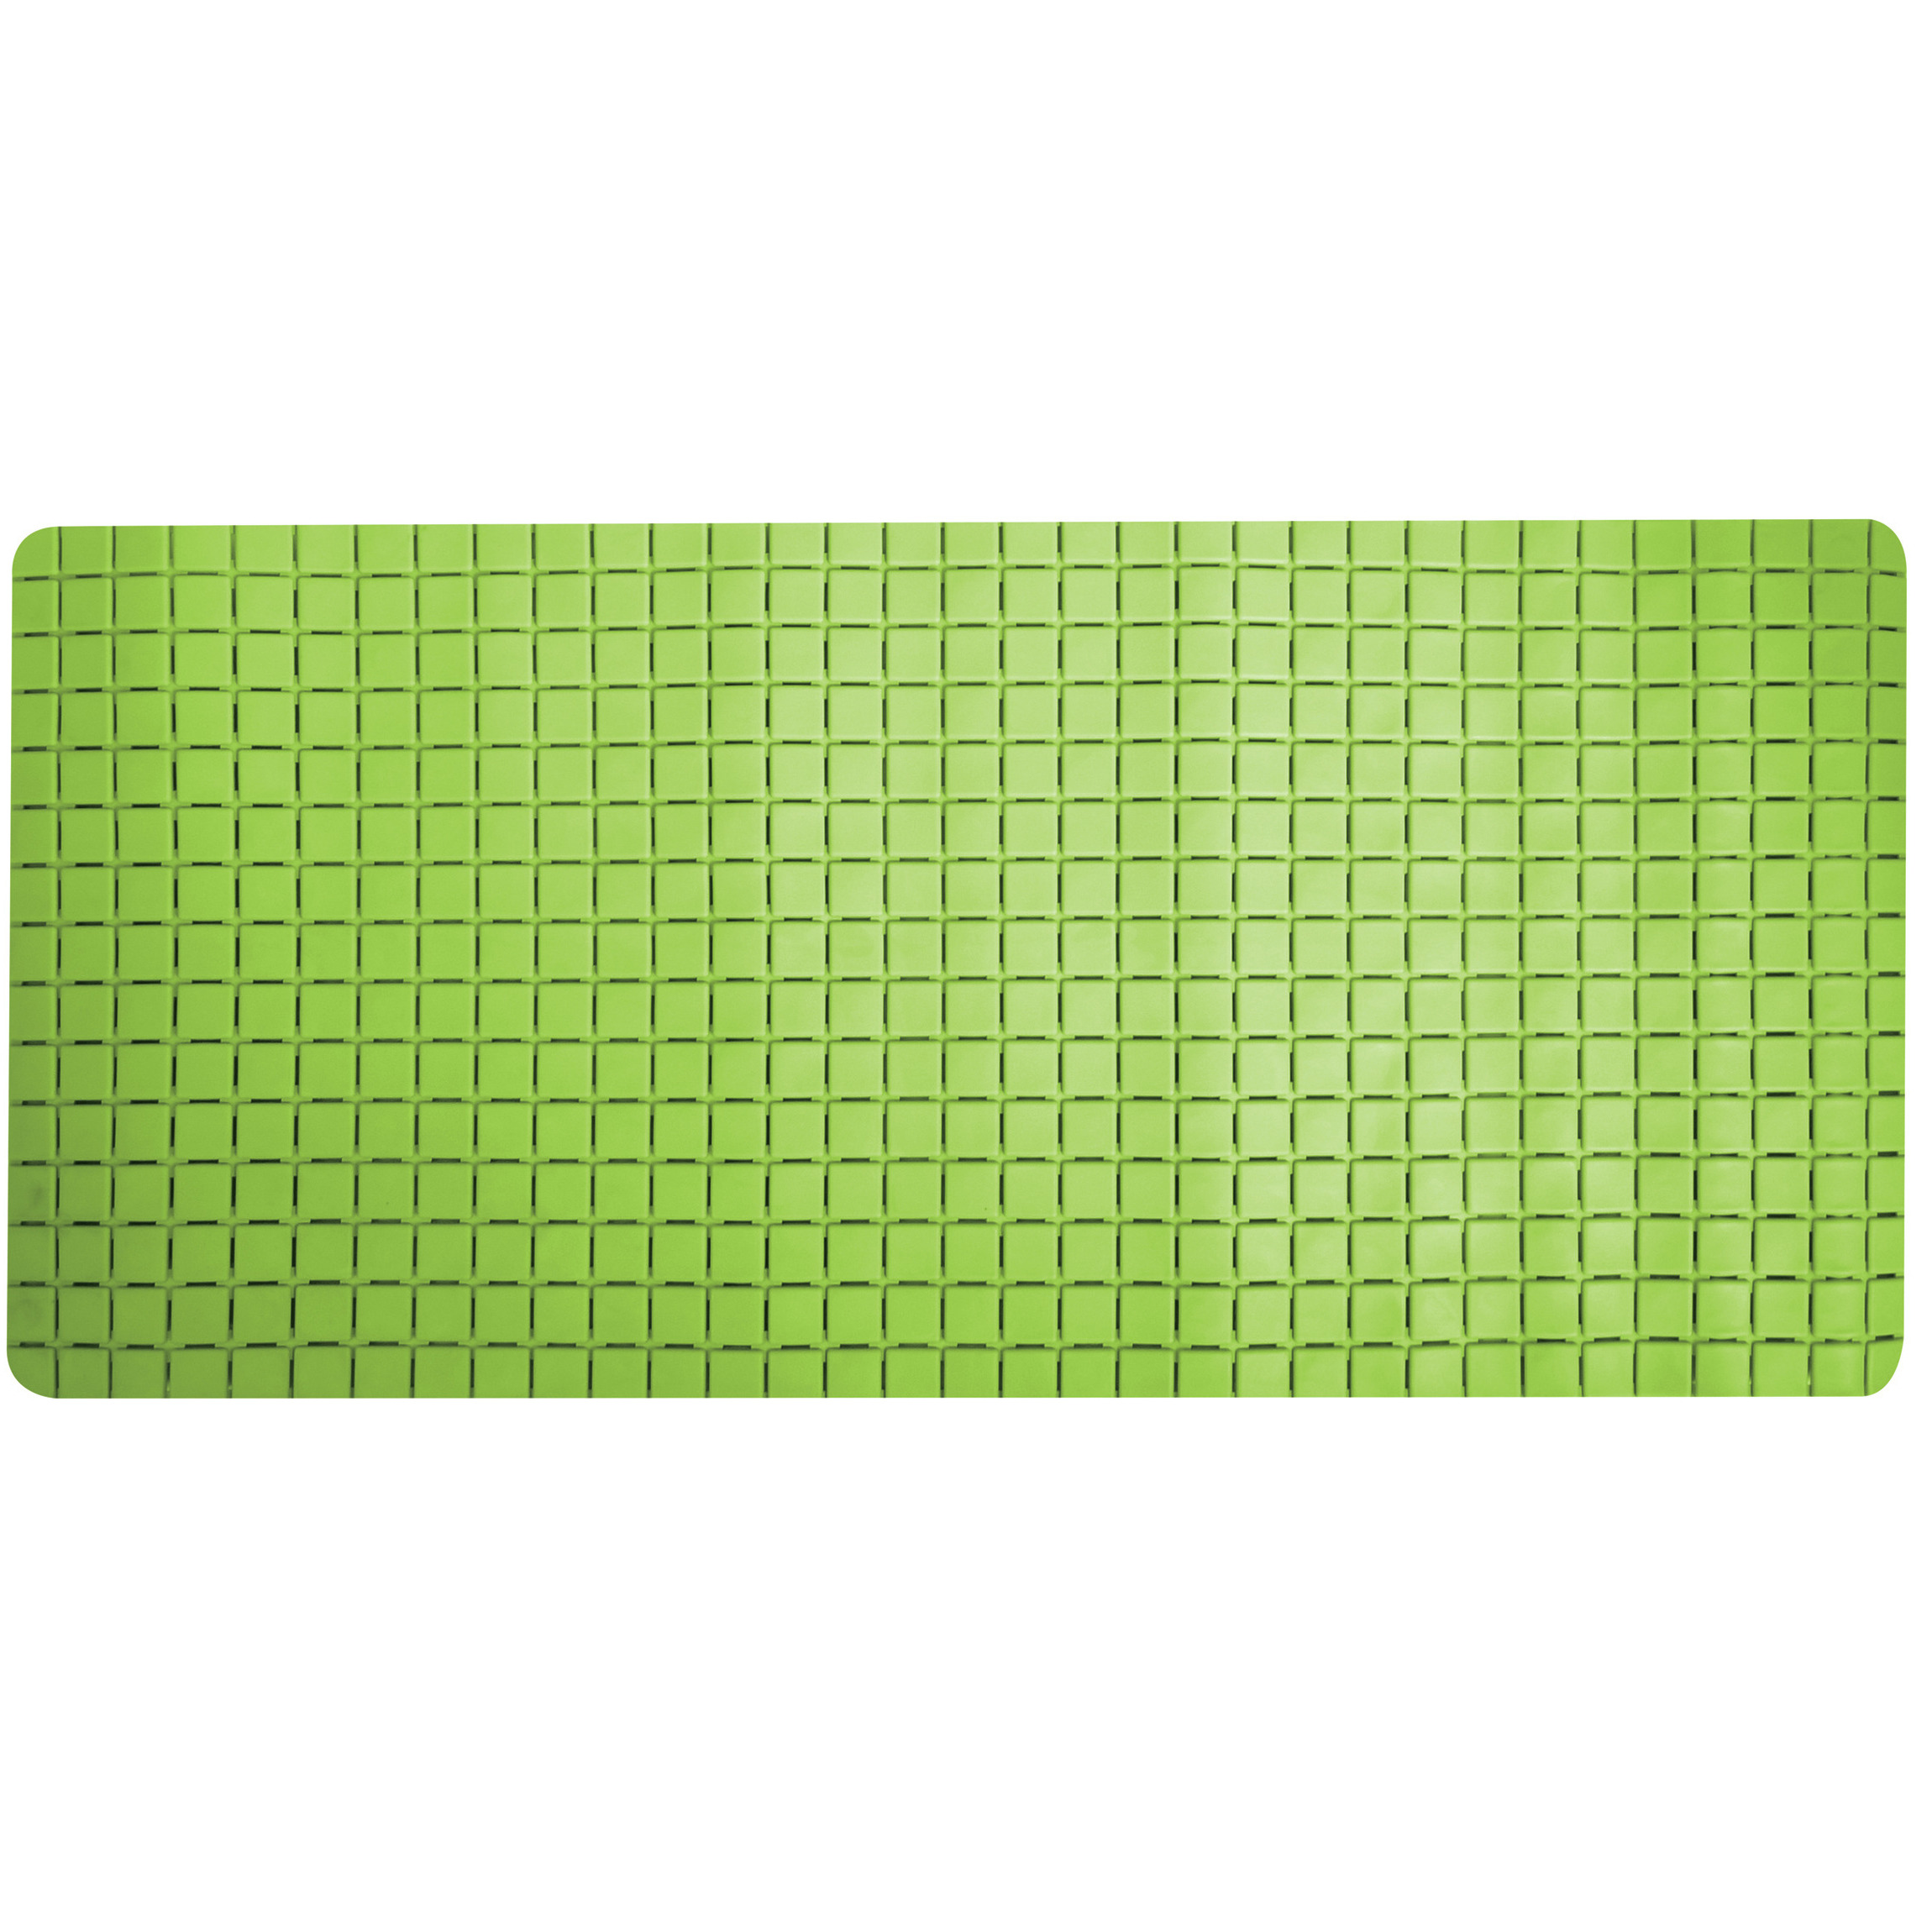 Douche-bad anti-slip mat badkamer rubber limegroen 76 x 36 cm rechthoek